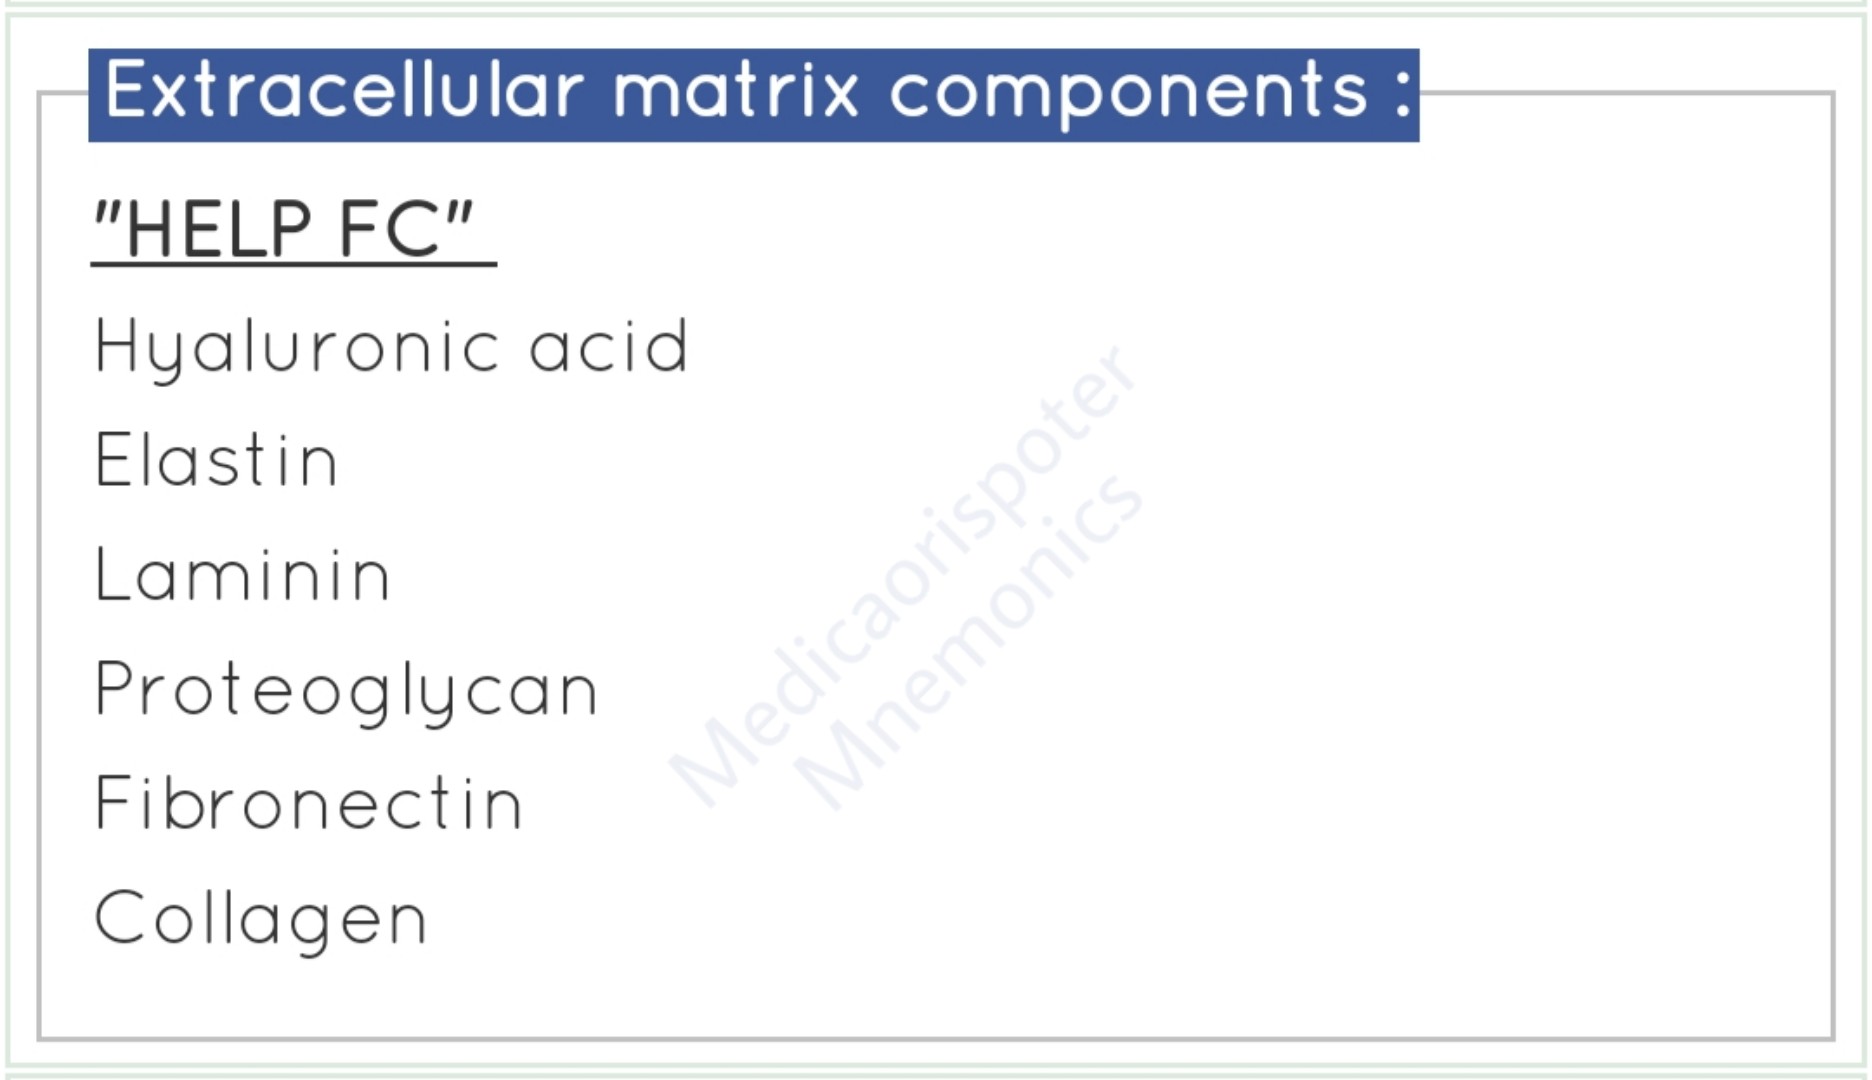 Components of Extracellular Matrix